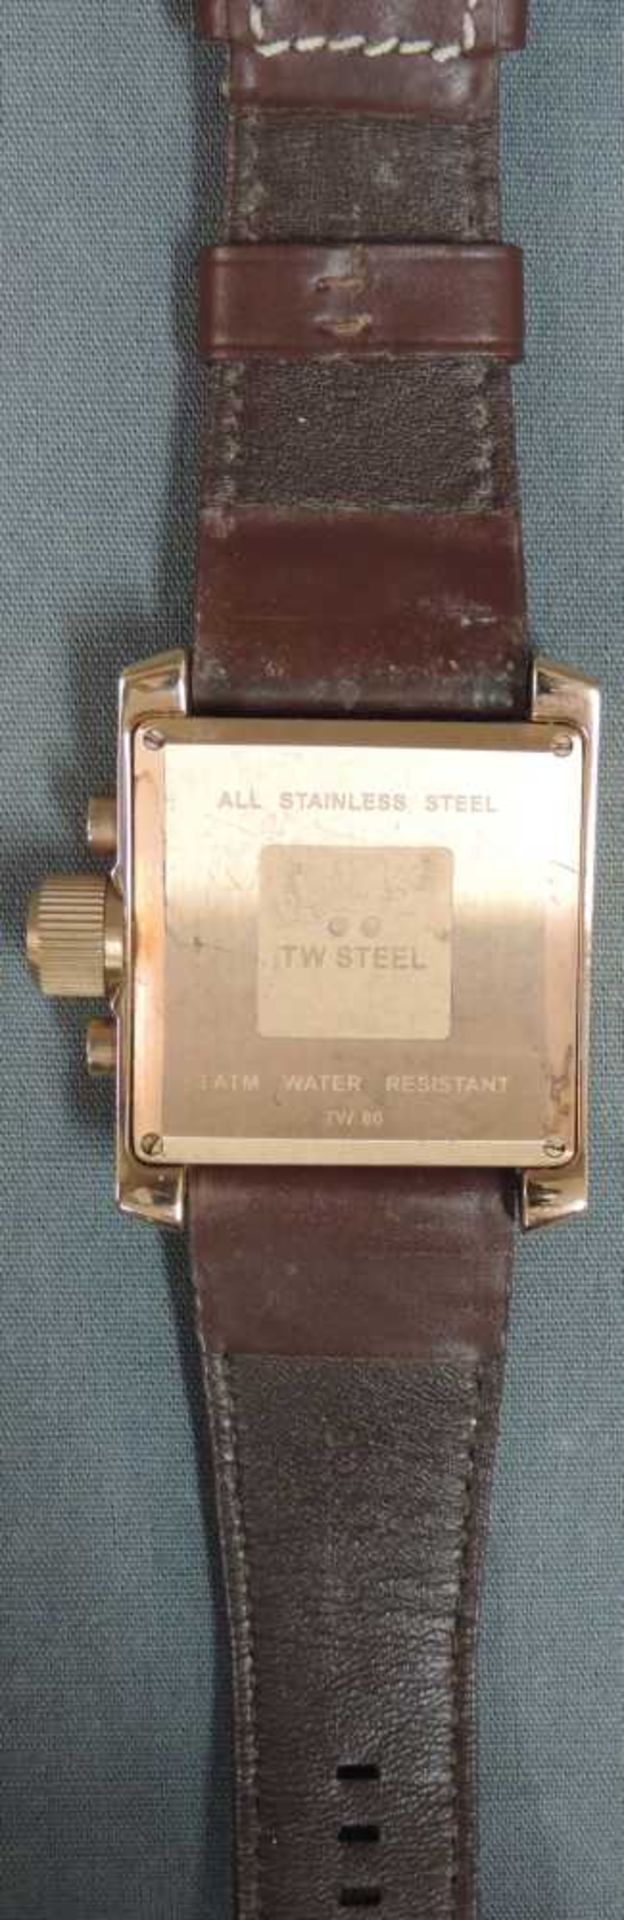 TW STEEL Grandeur TW80. Armbanduhr. 50 mm x 43 mm das Gehäuse insgesamt, jedoch ohne Krone. Läuft - Bild 2 aus 3